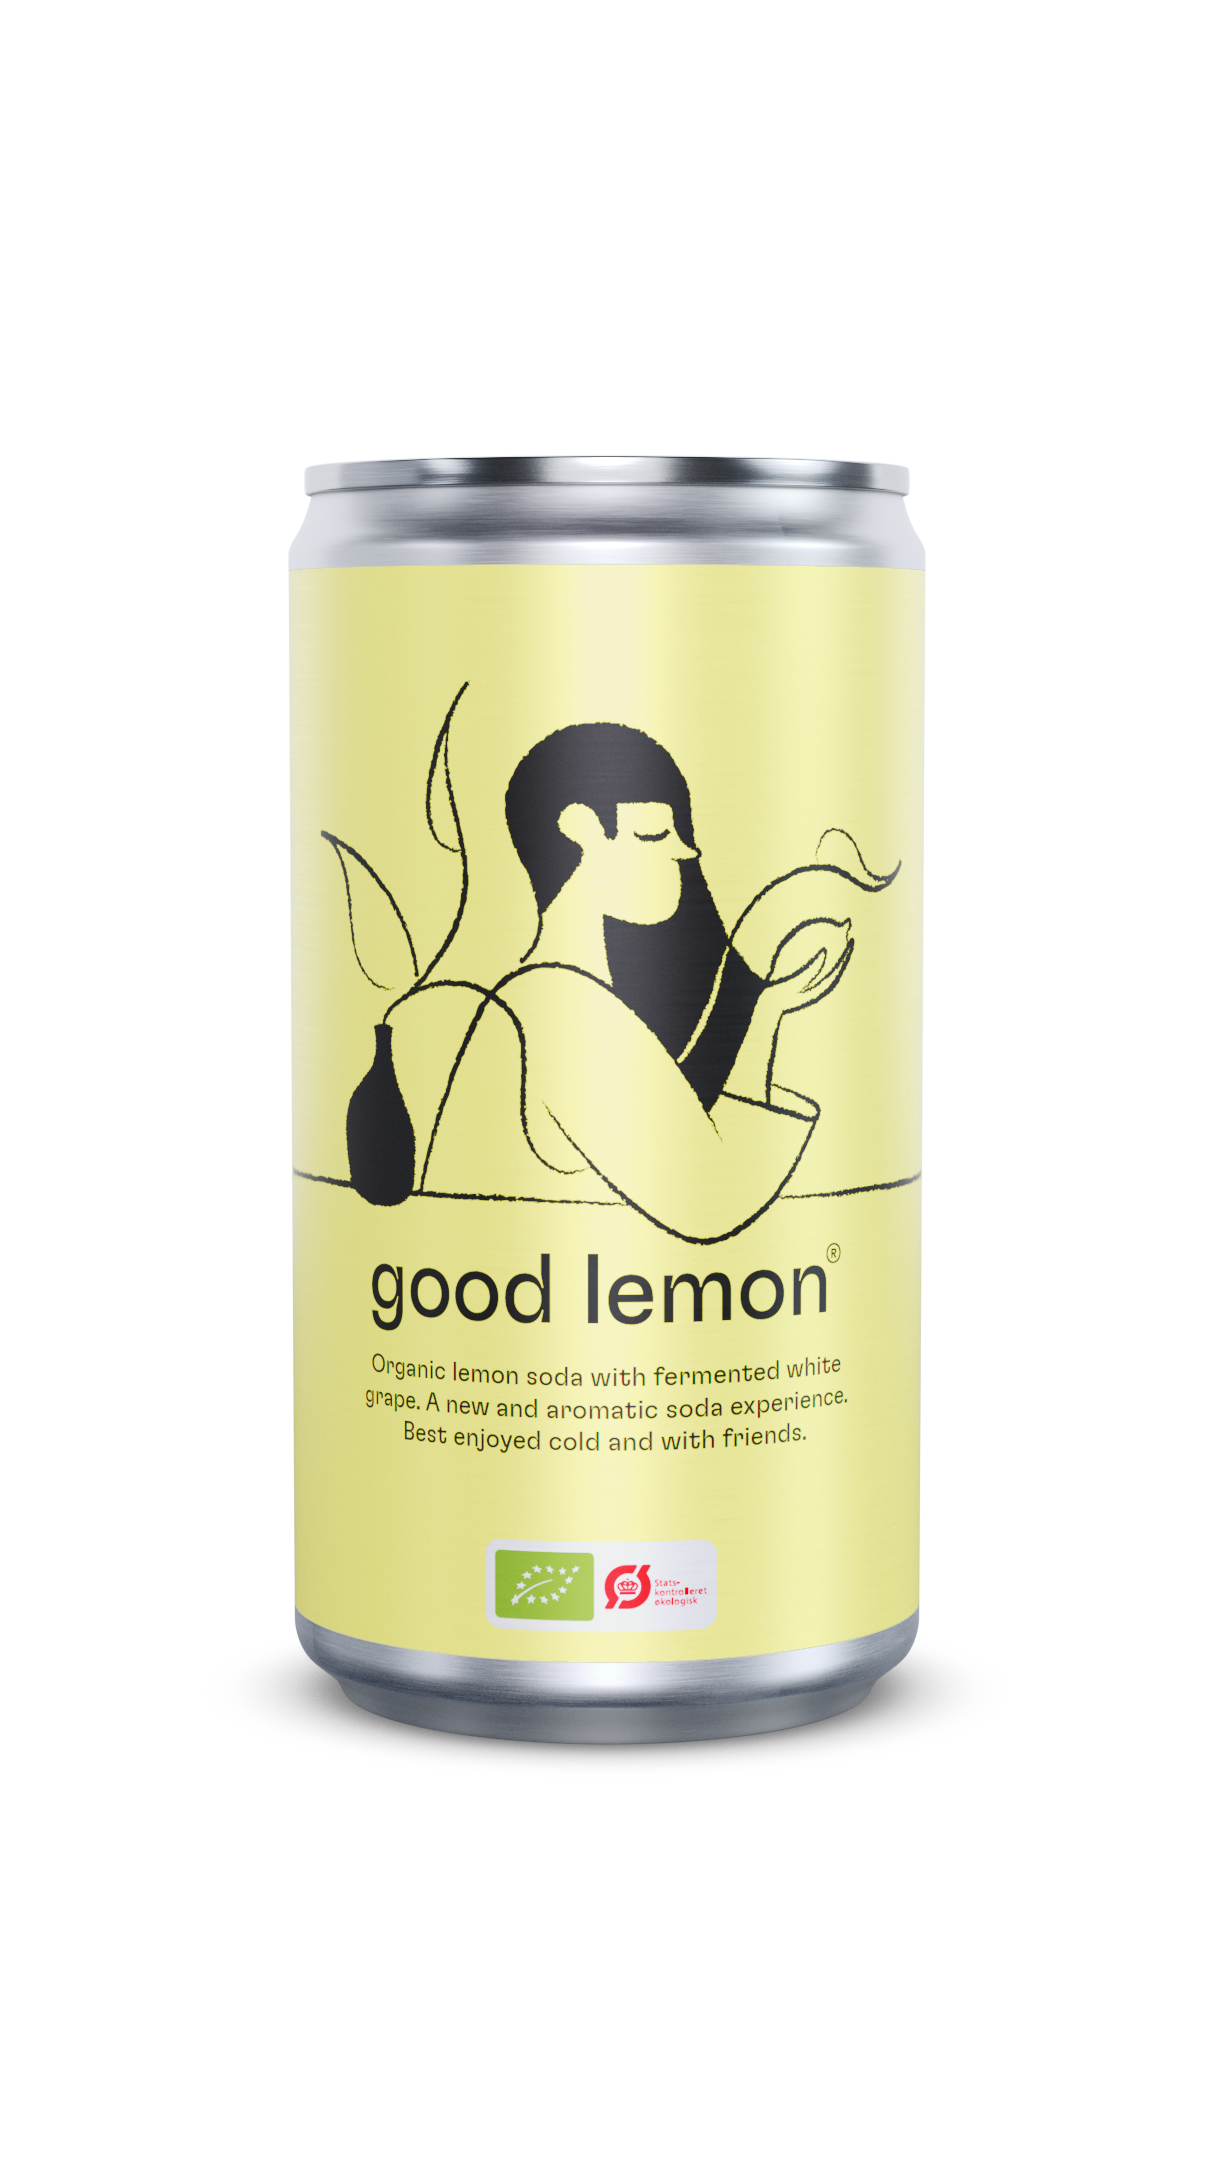 Good_Lemon_Front_RevA-1